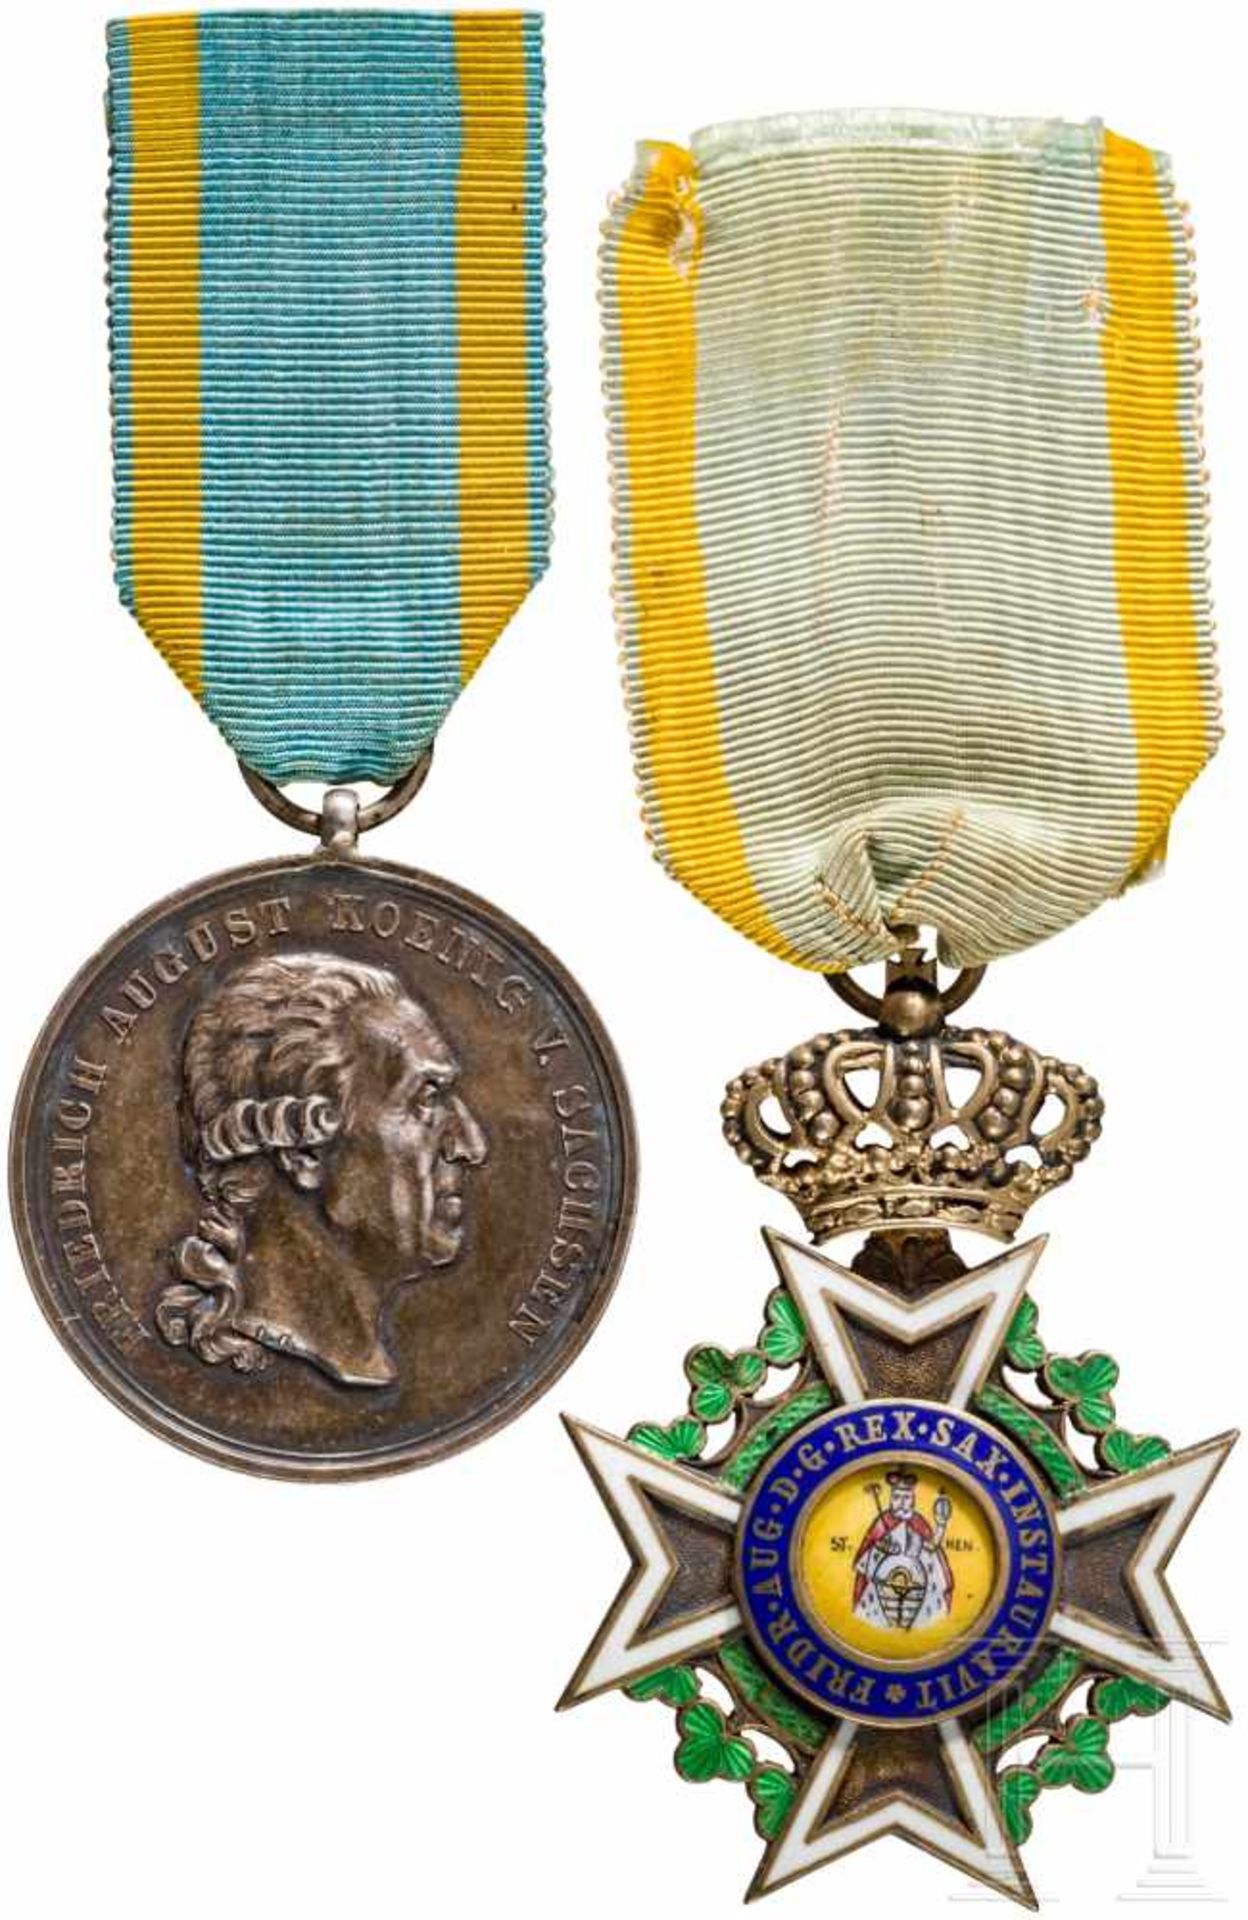 Königlicher Militär St. Heinrichs-Orden – RitterkreuzSilber vergoldet und emailliert, Maße ca. 54